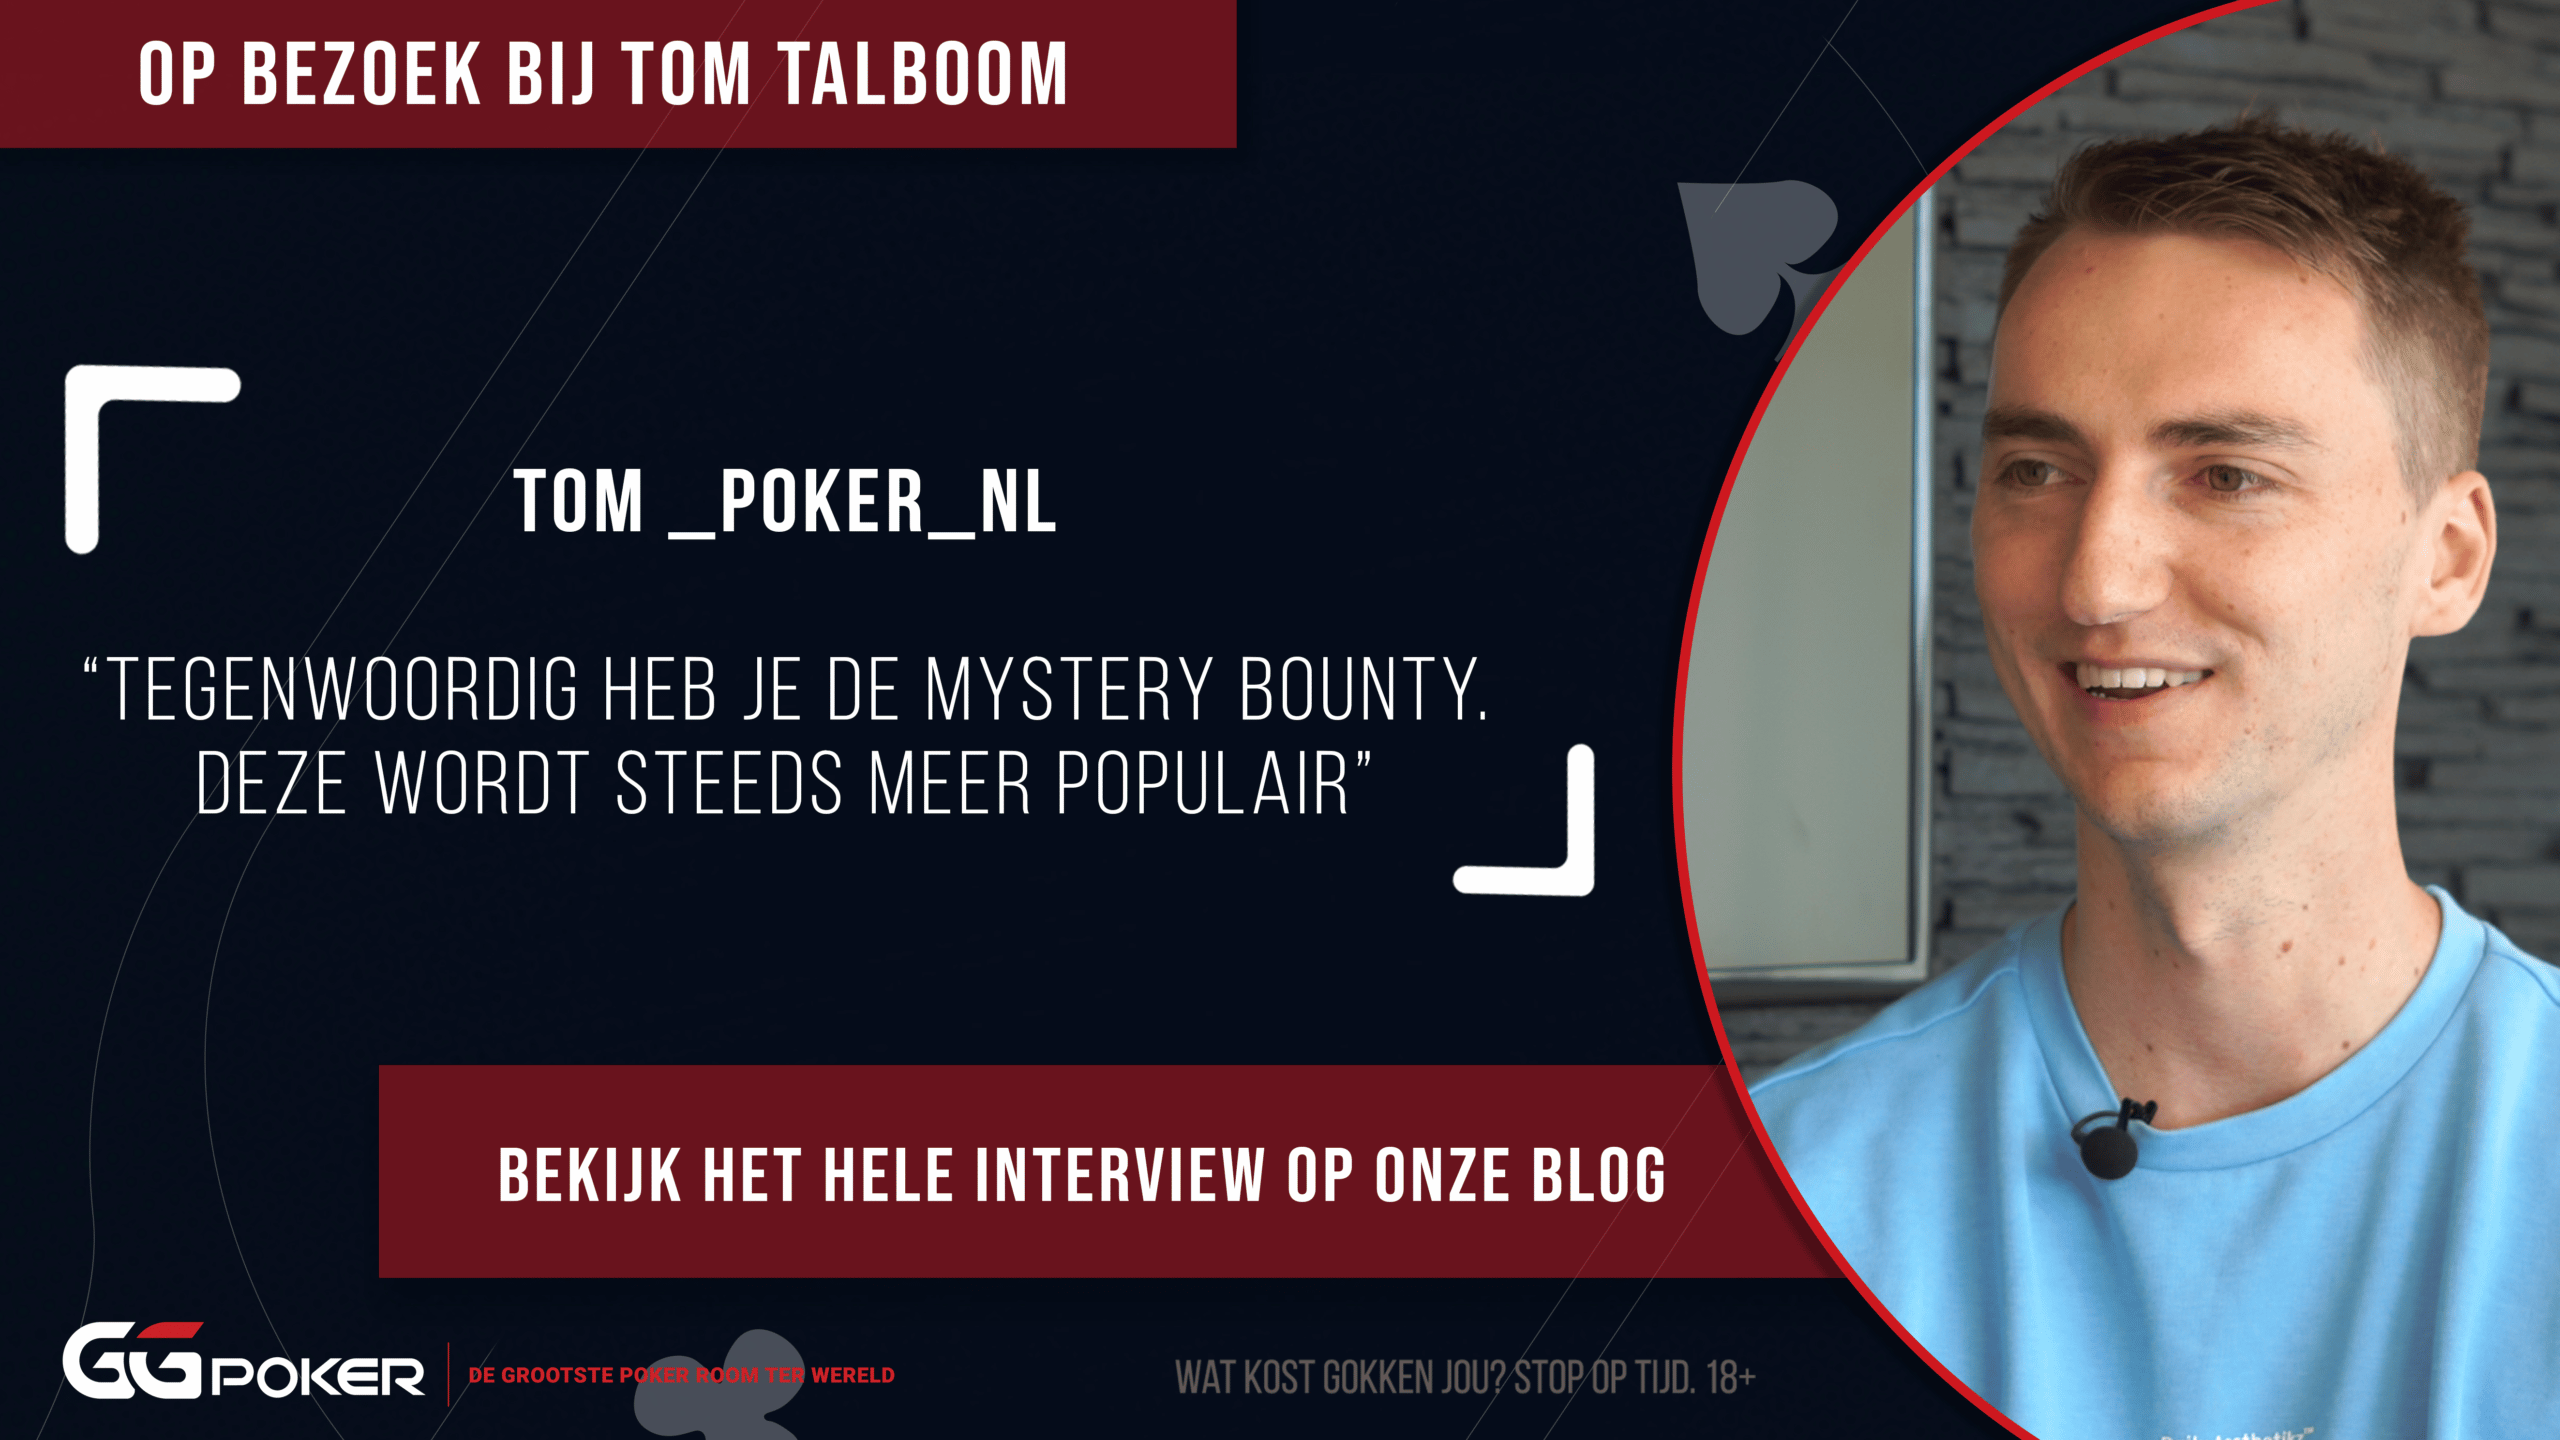 Tom_Poker_NL: ““Tegenwoordig heb je de mystery bounty. Deze wordt steeds meer populair”